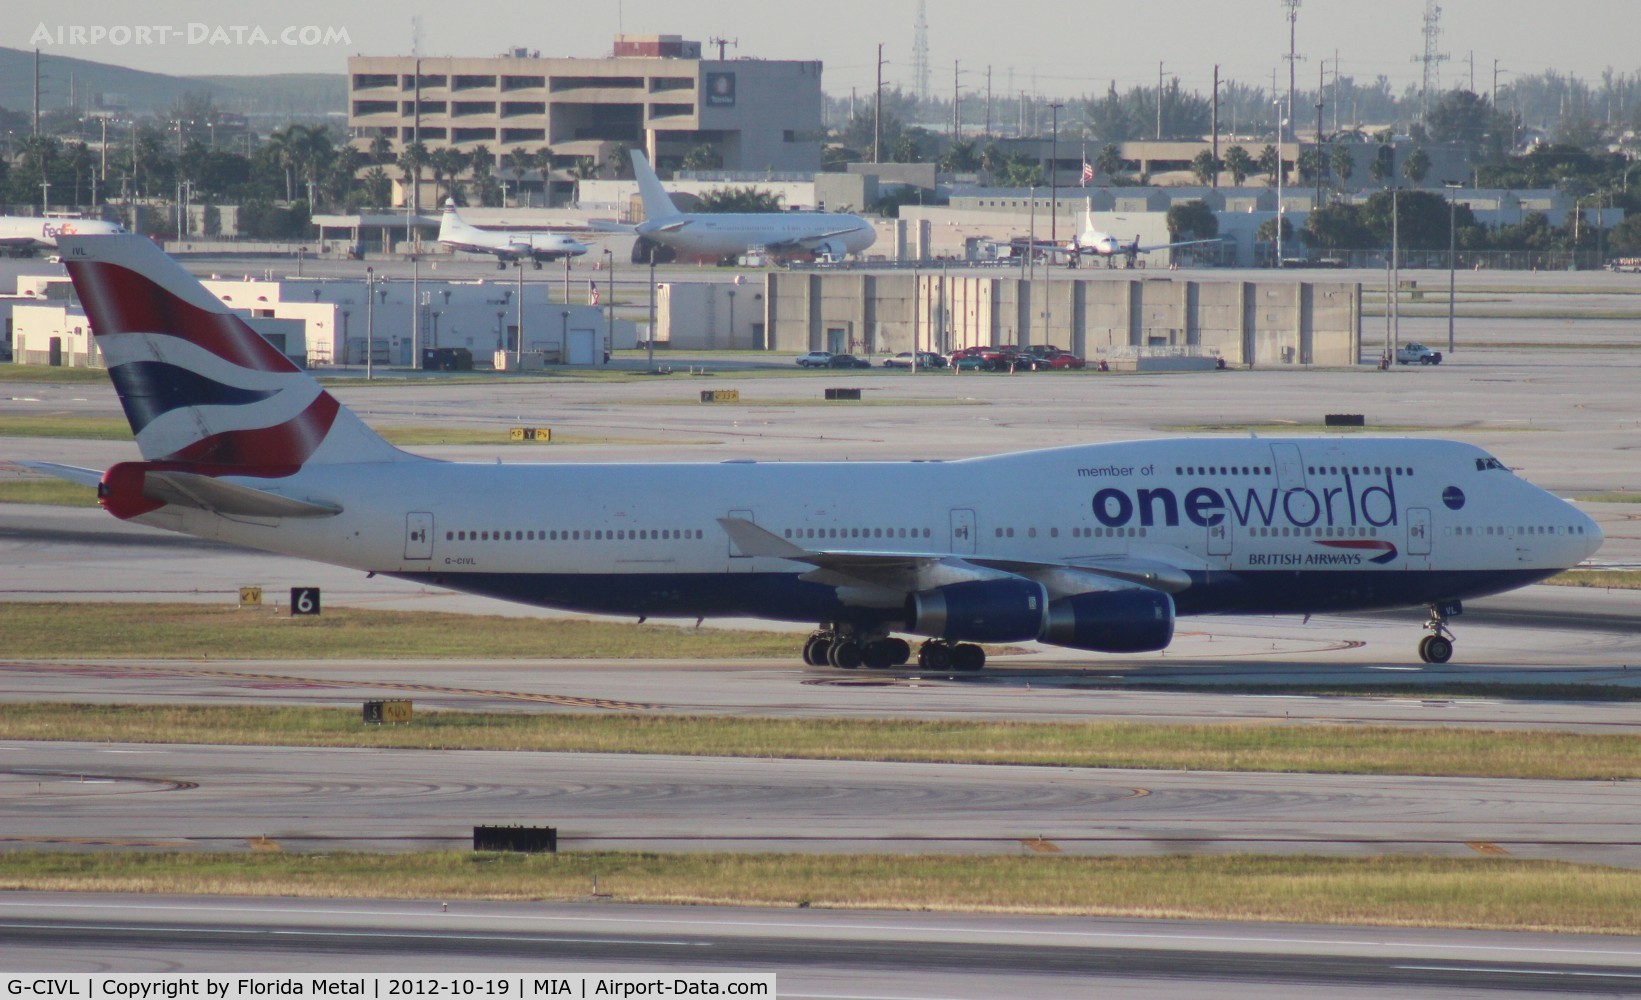 G-CIVL, 1997 Boeing 747-436 C/N 27478, British Airways One World 747-400